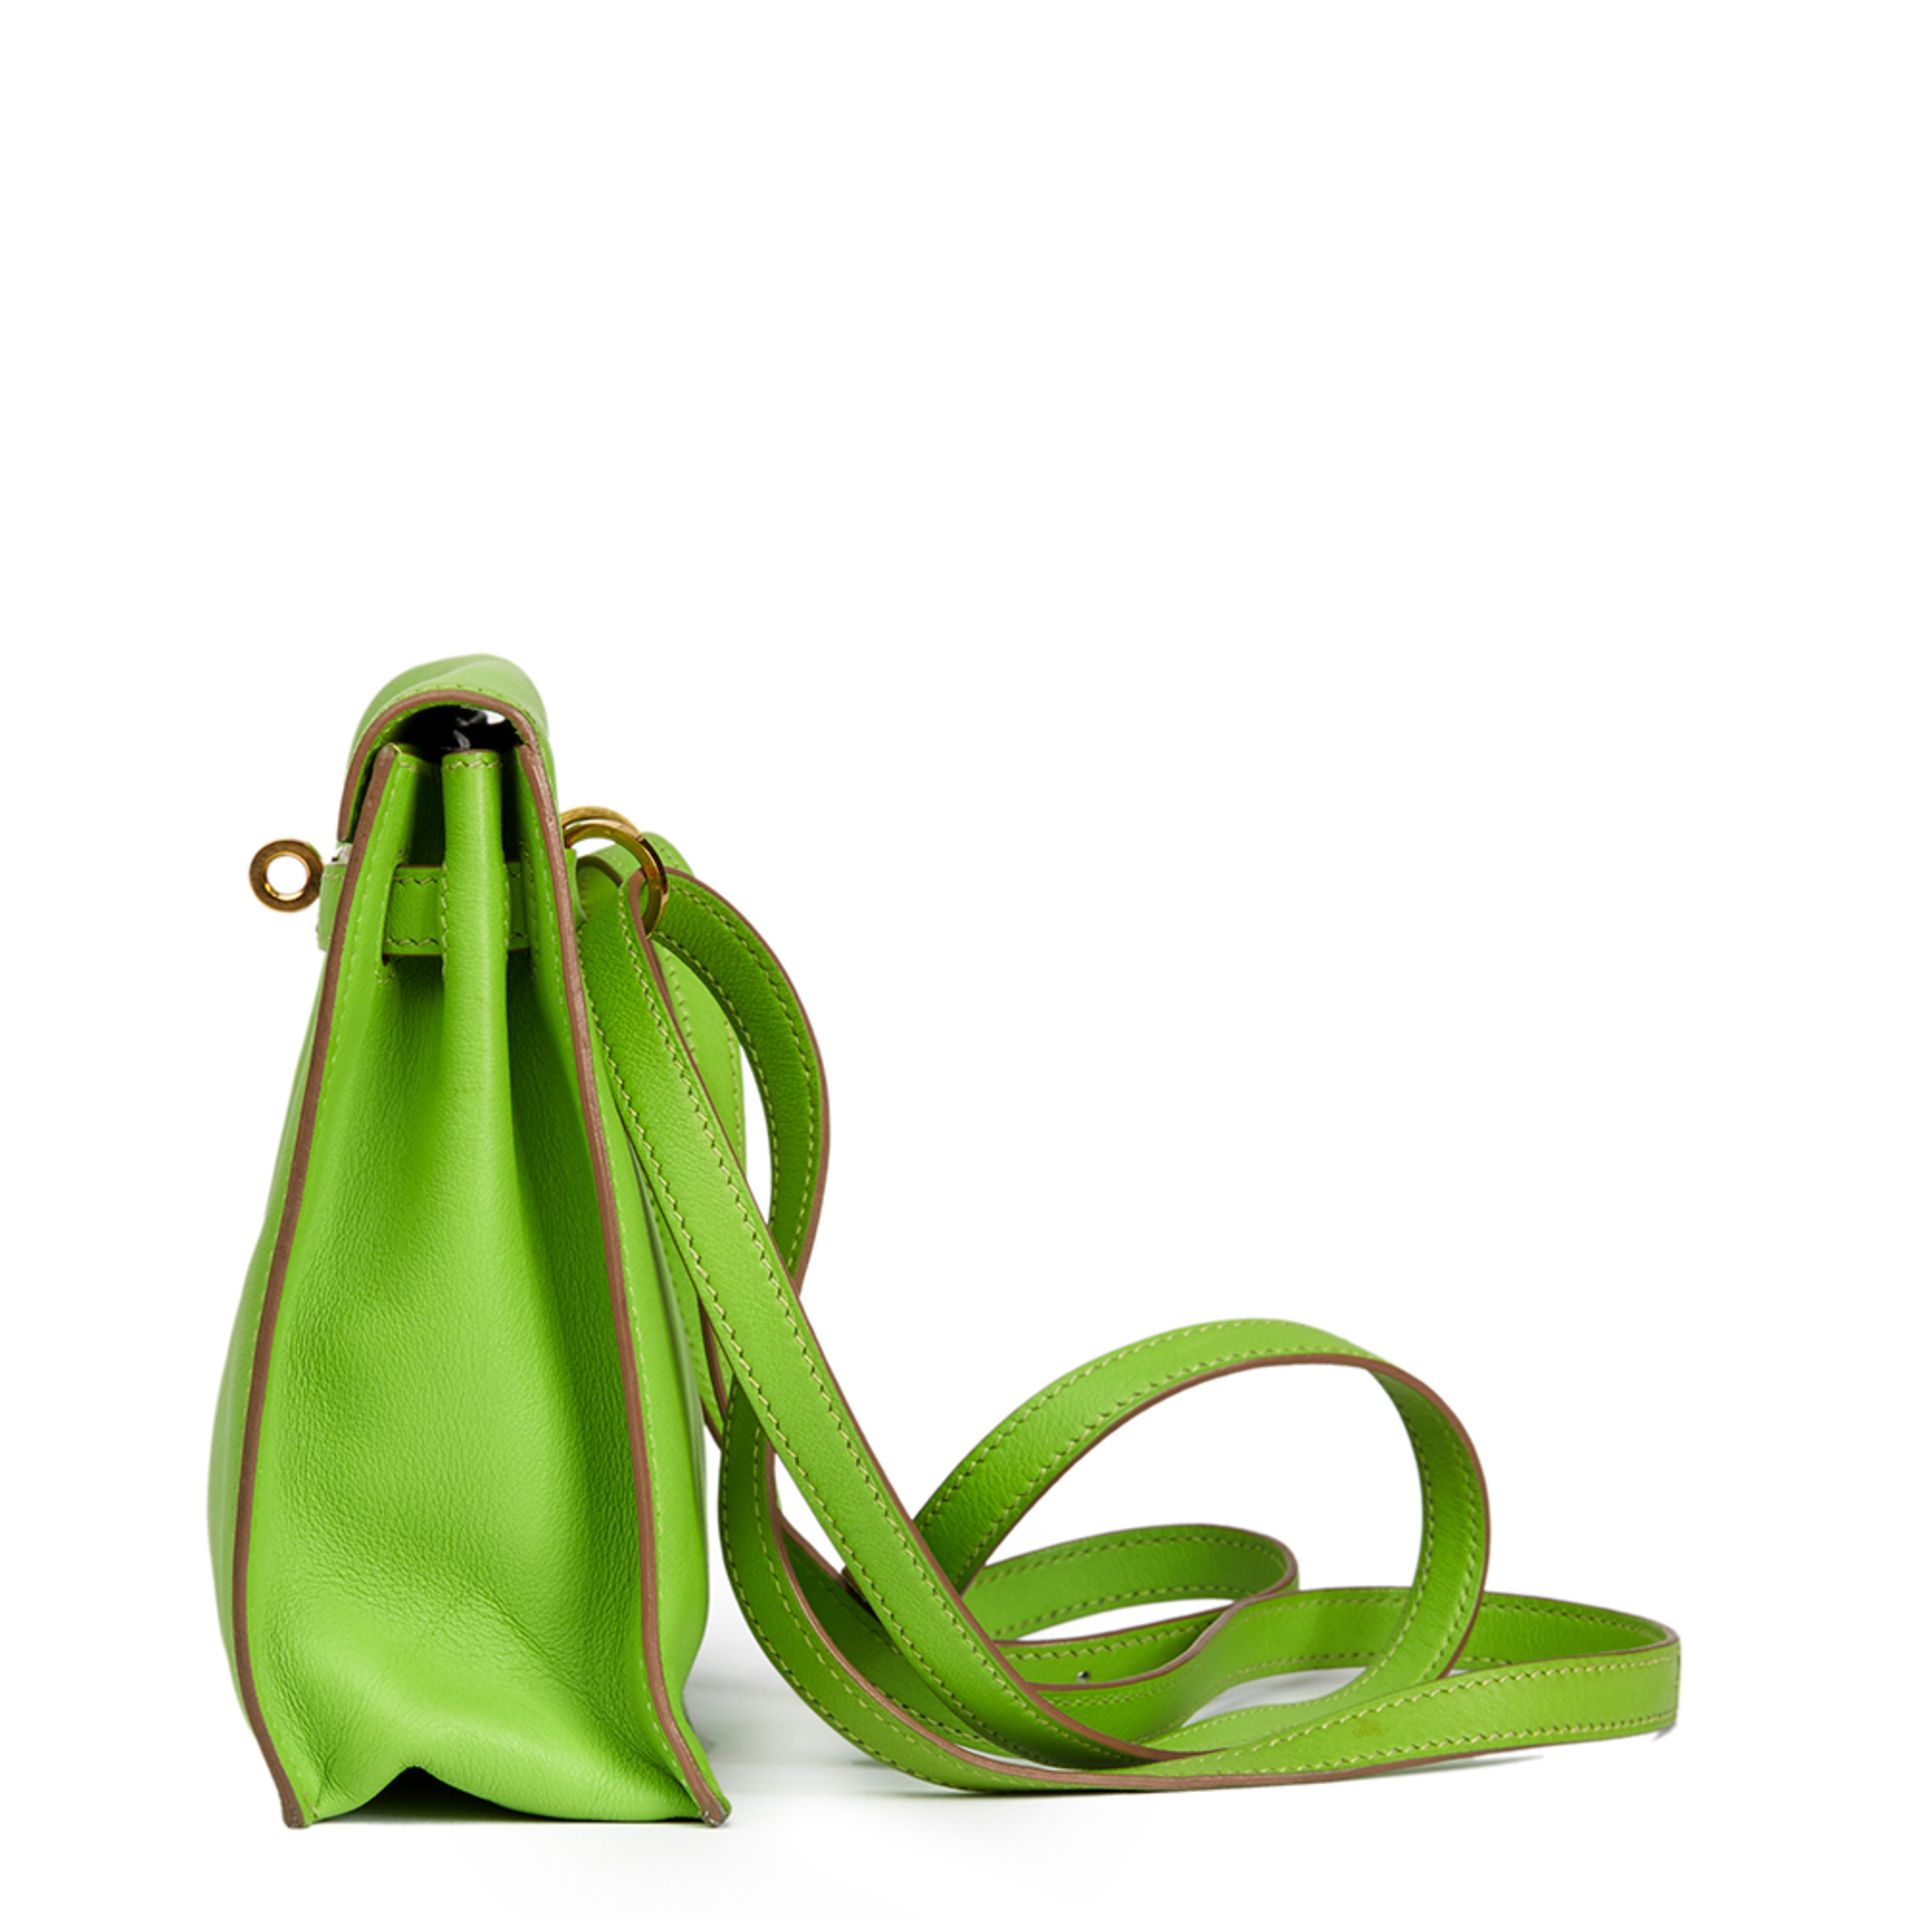 Apple Green Swift Leather Kelly Danse - Image 9 of 16